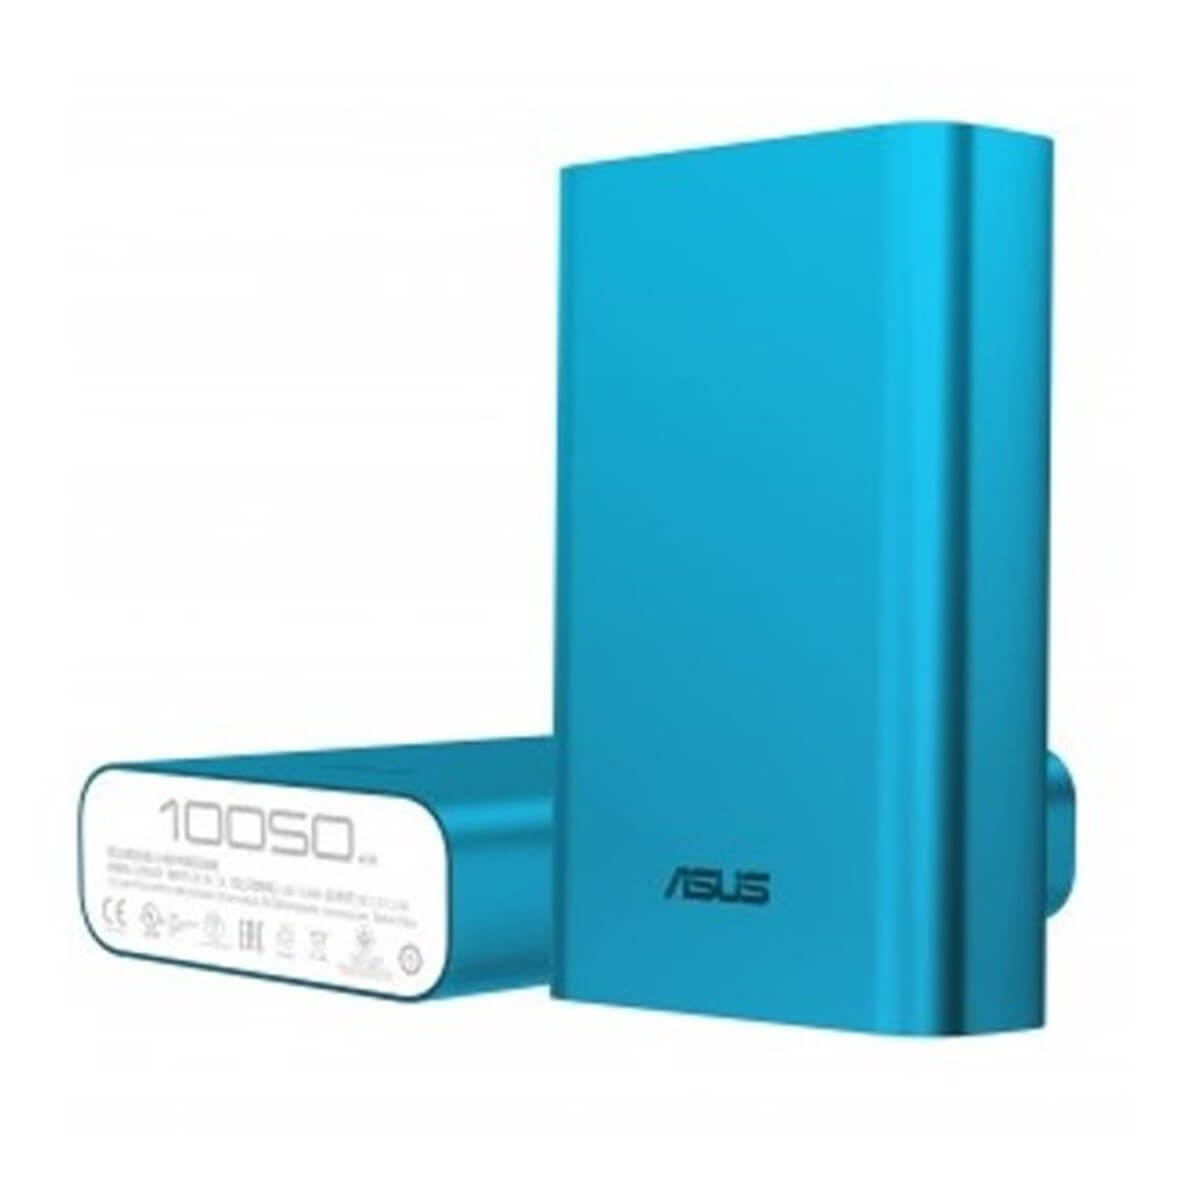 Asus ZenPower ABTU005 10050 mAh Taşınabilir Şarj Cihazı-Mavi